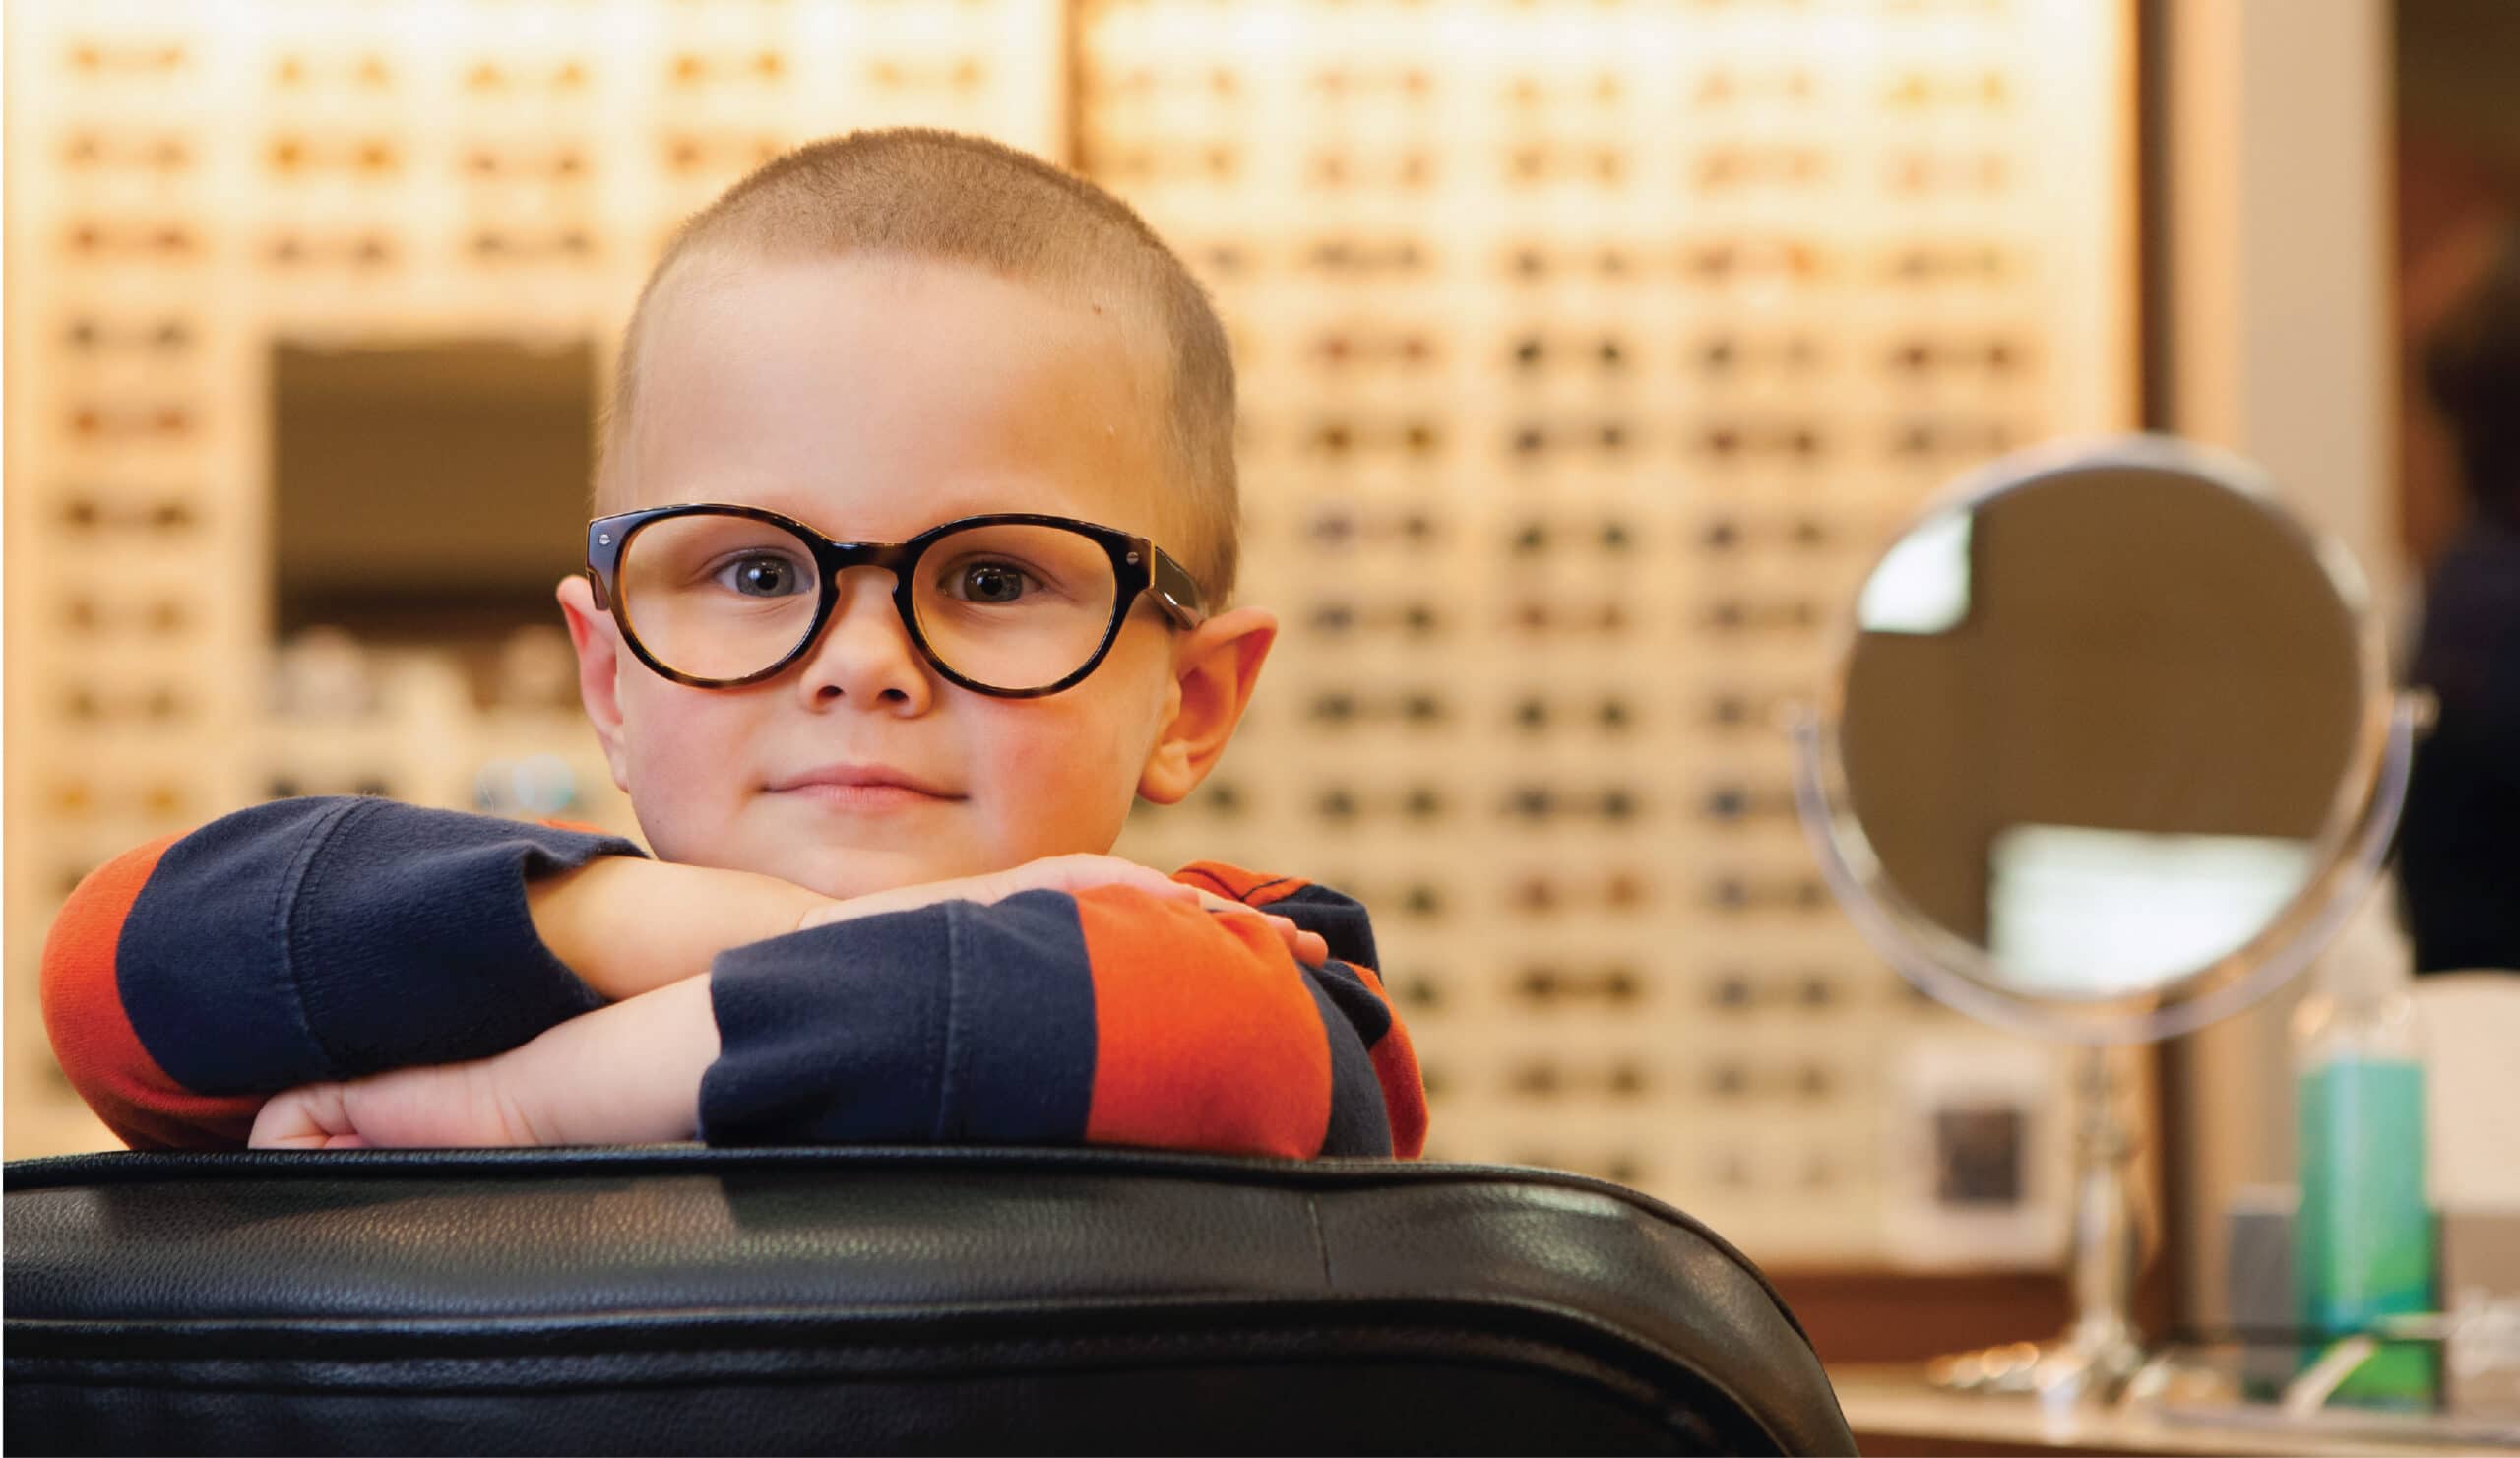 Человека с нарушением зрения называют. Дети в очках. Малыш в очках. Очки для детей. Детские очки для зрения.